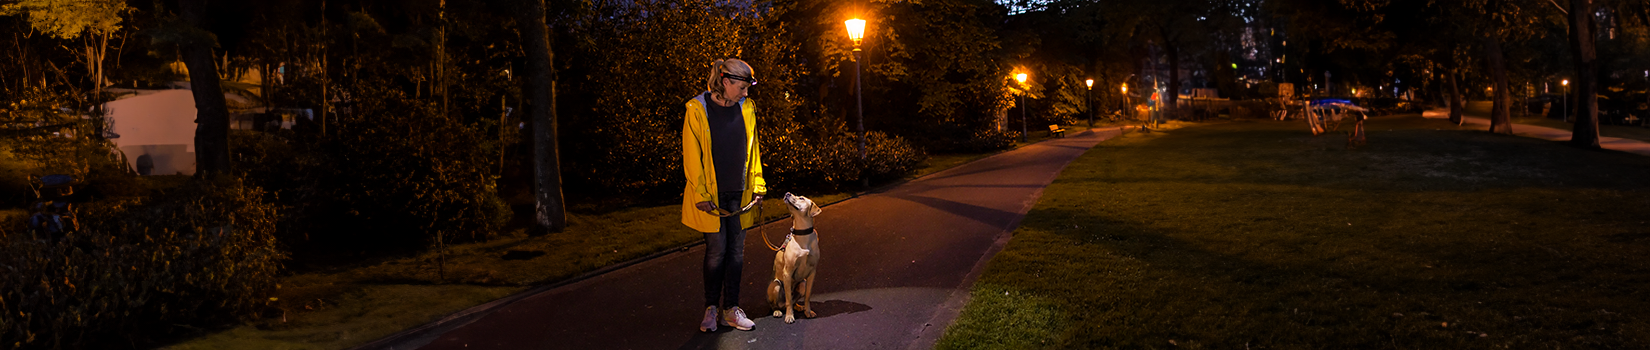 Das Bild zeigt eine Frau, die im Dunkeln mit ihrem hund spazieren geht und dabei eine Stirnlampe trägt